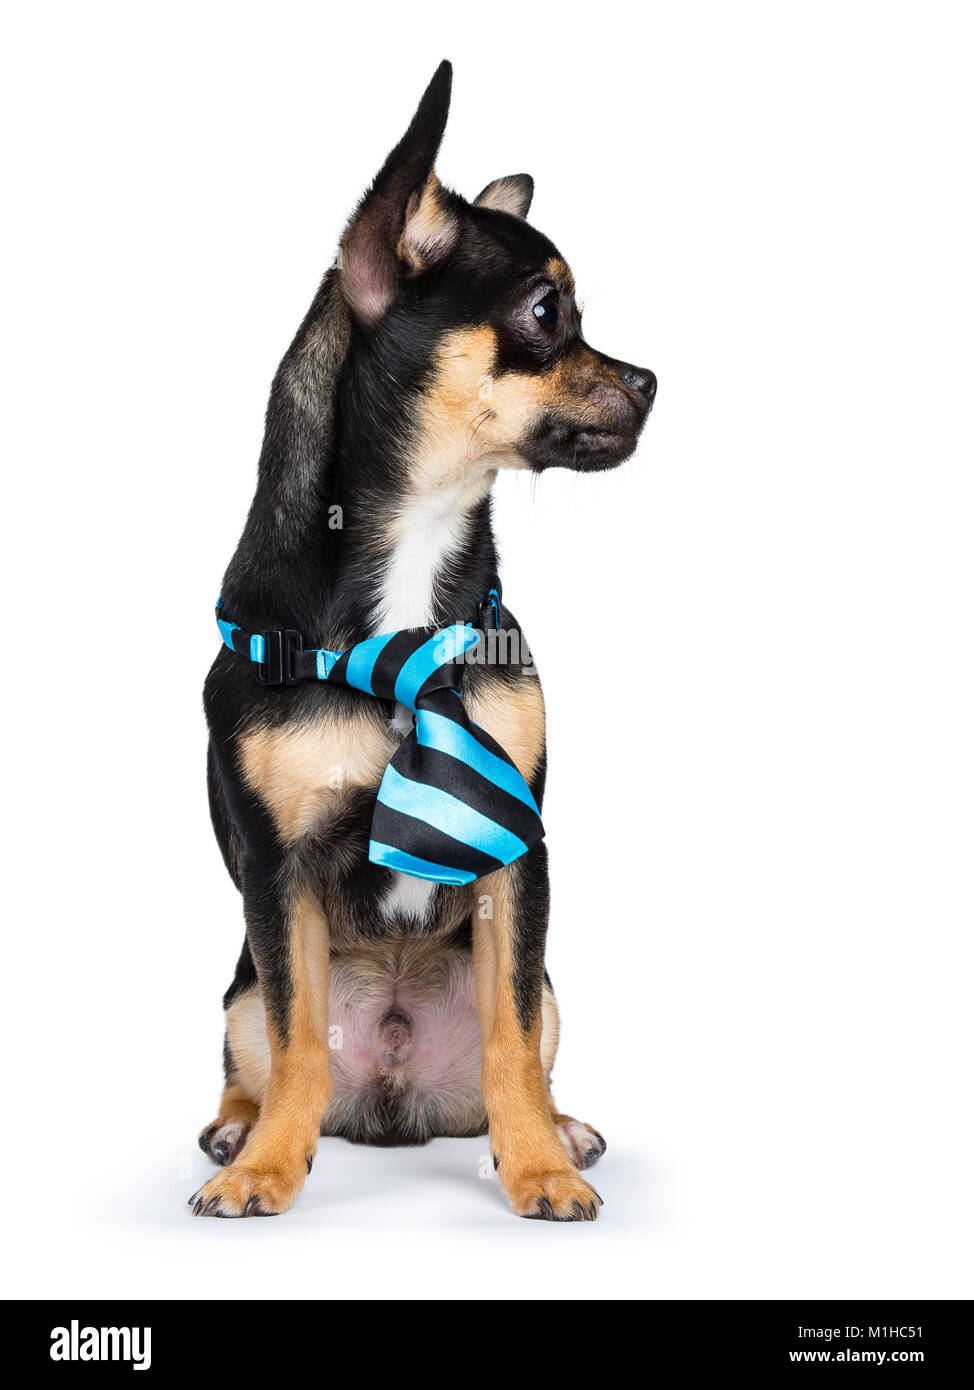 Nero cane chiwawa con blue black tie guardando a destra isolato su sfondo bianco Foto Stock